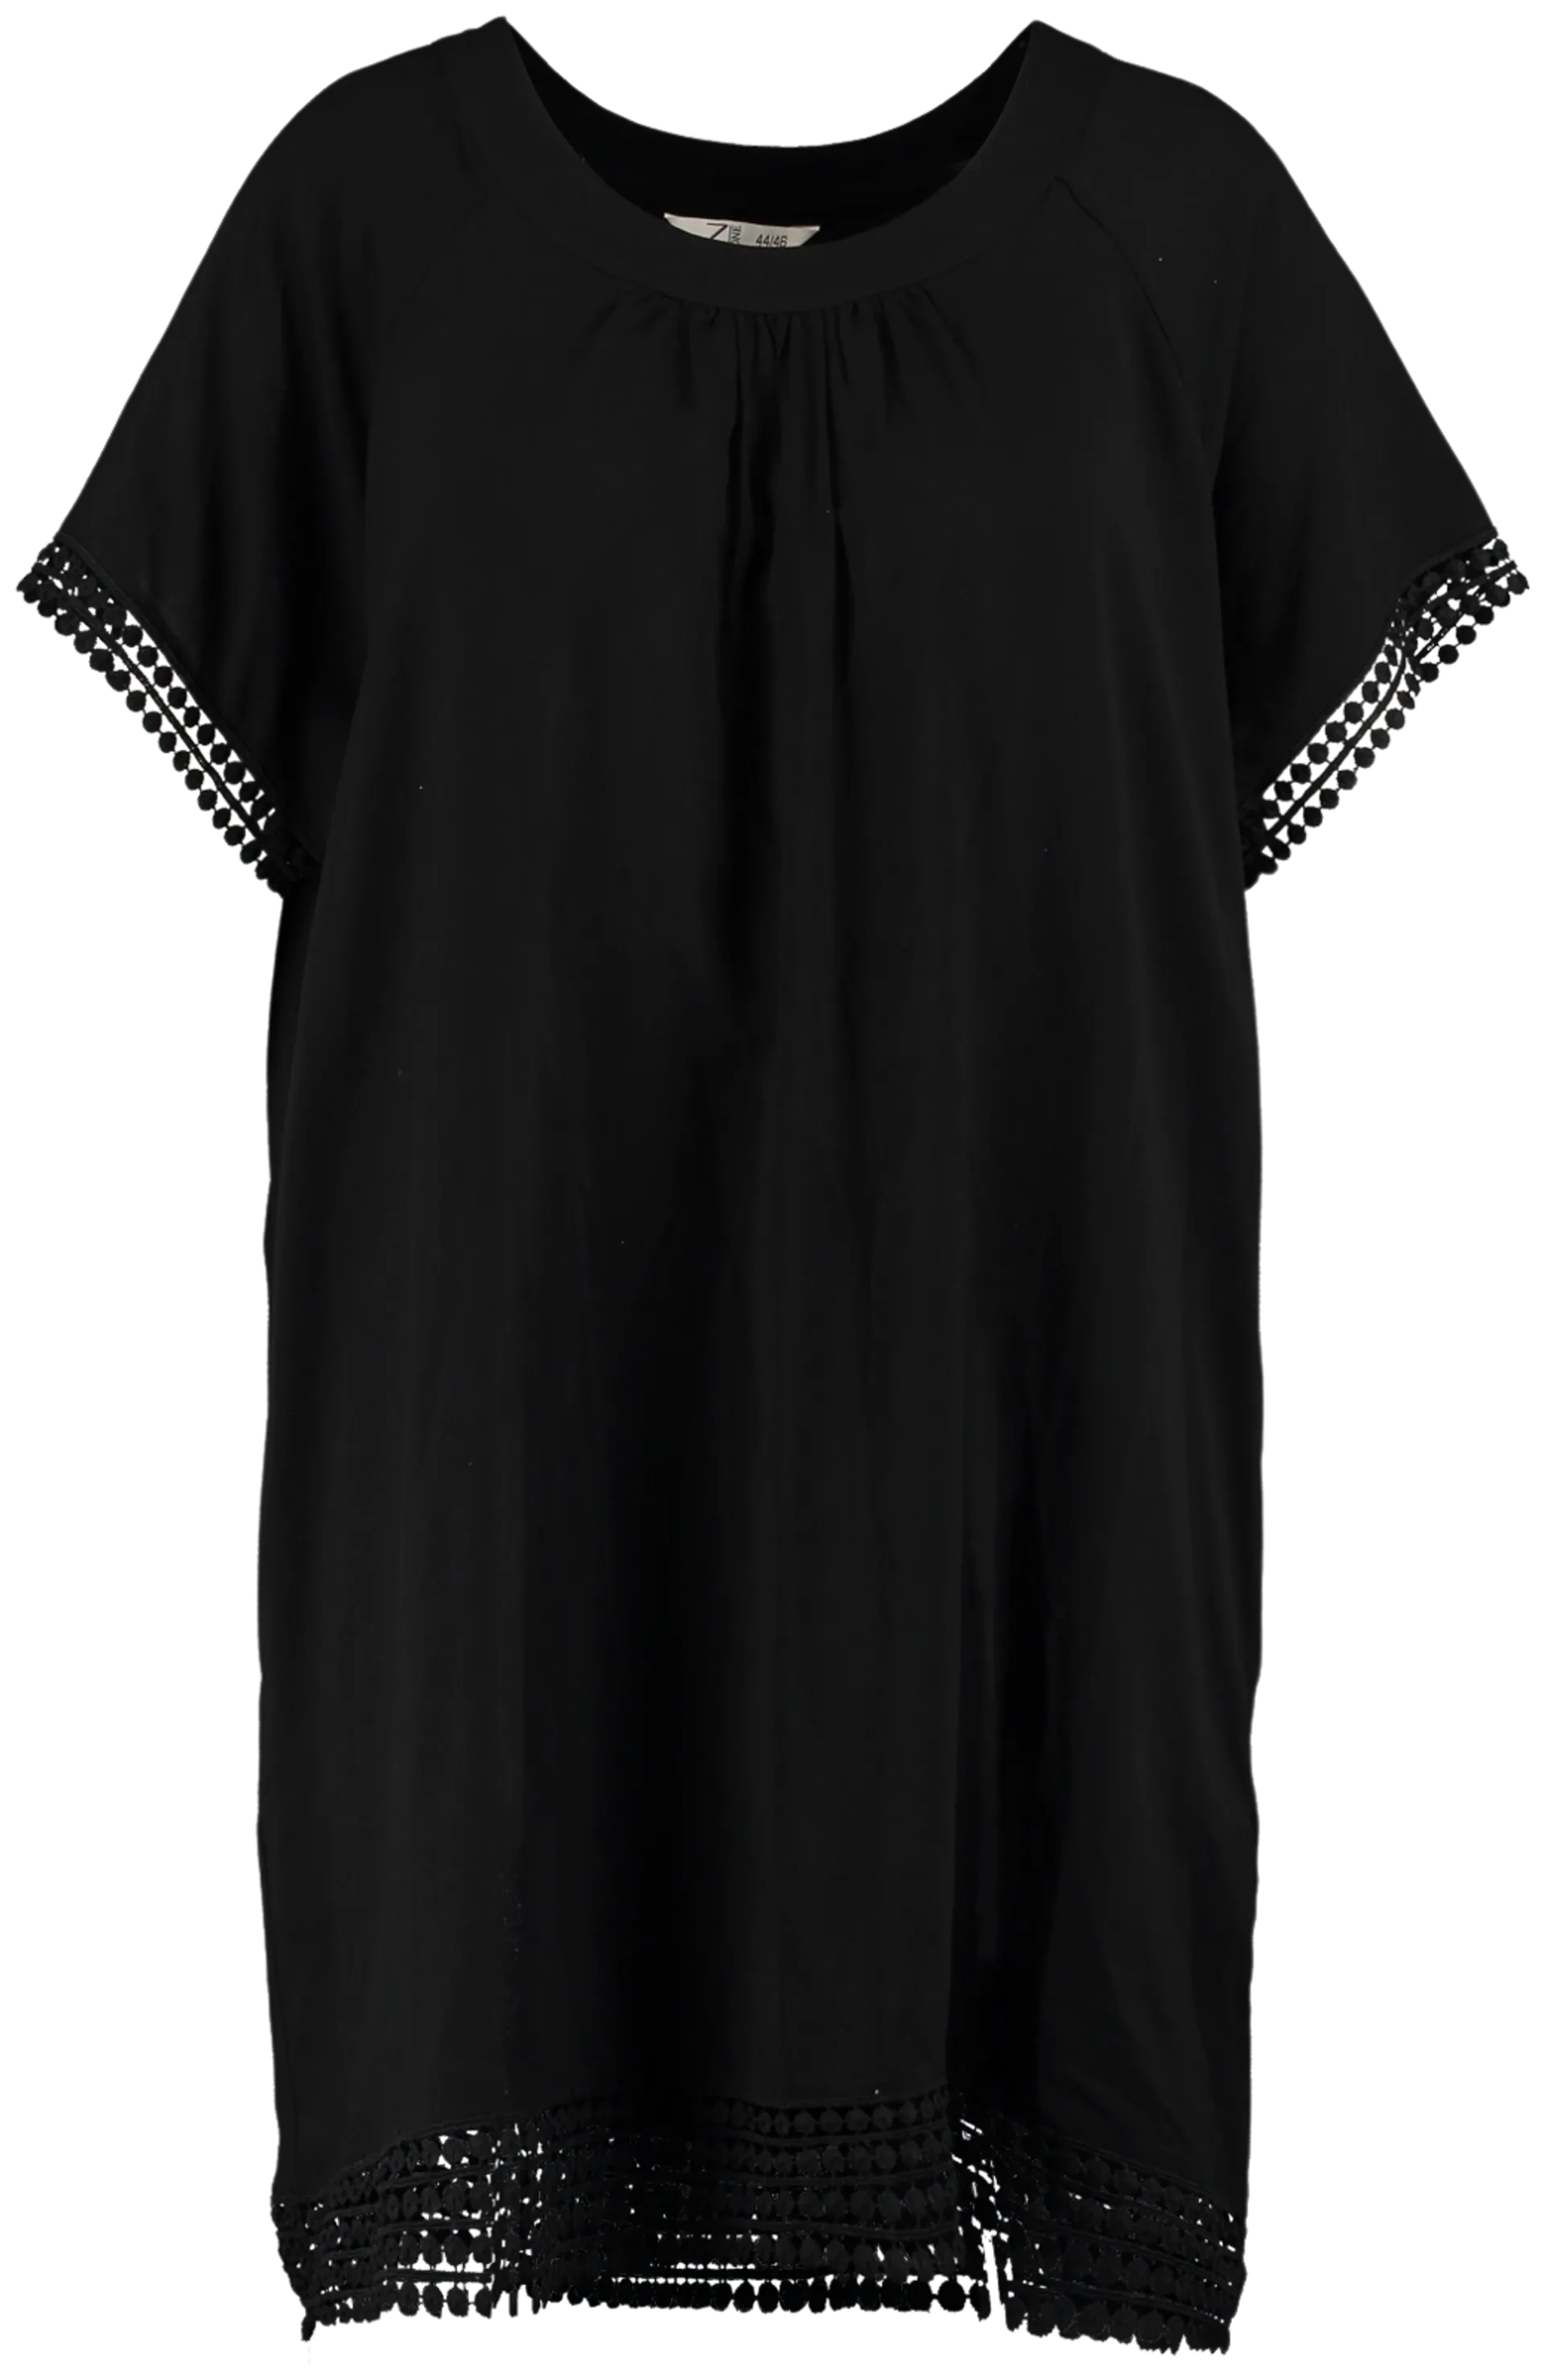 Z-one naisten mekko Soraya BAT-151-0121Z1 - BLACK - 1